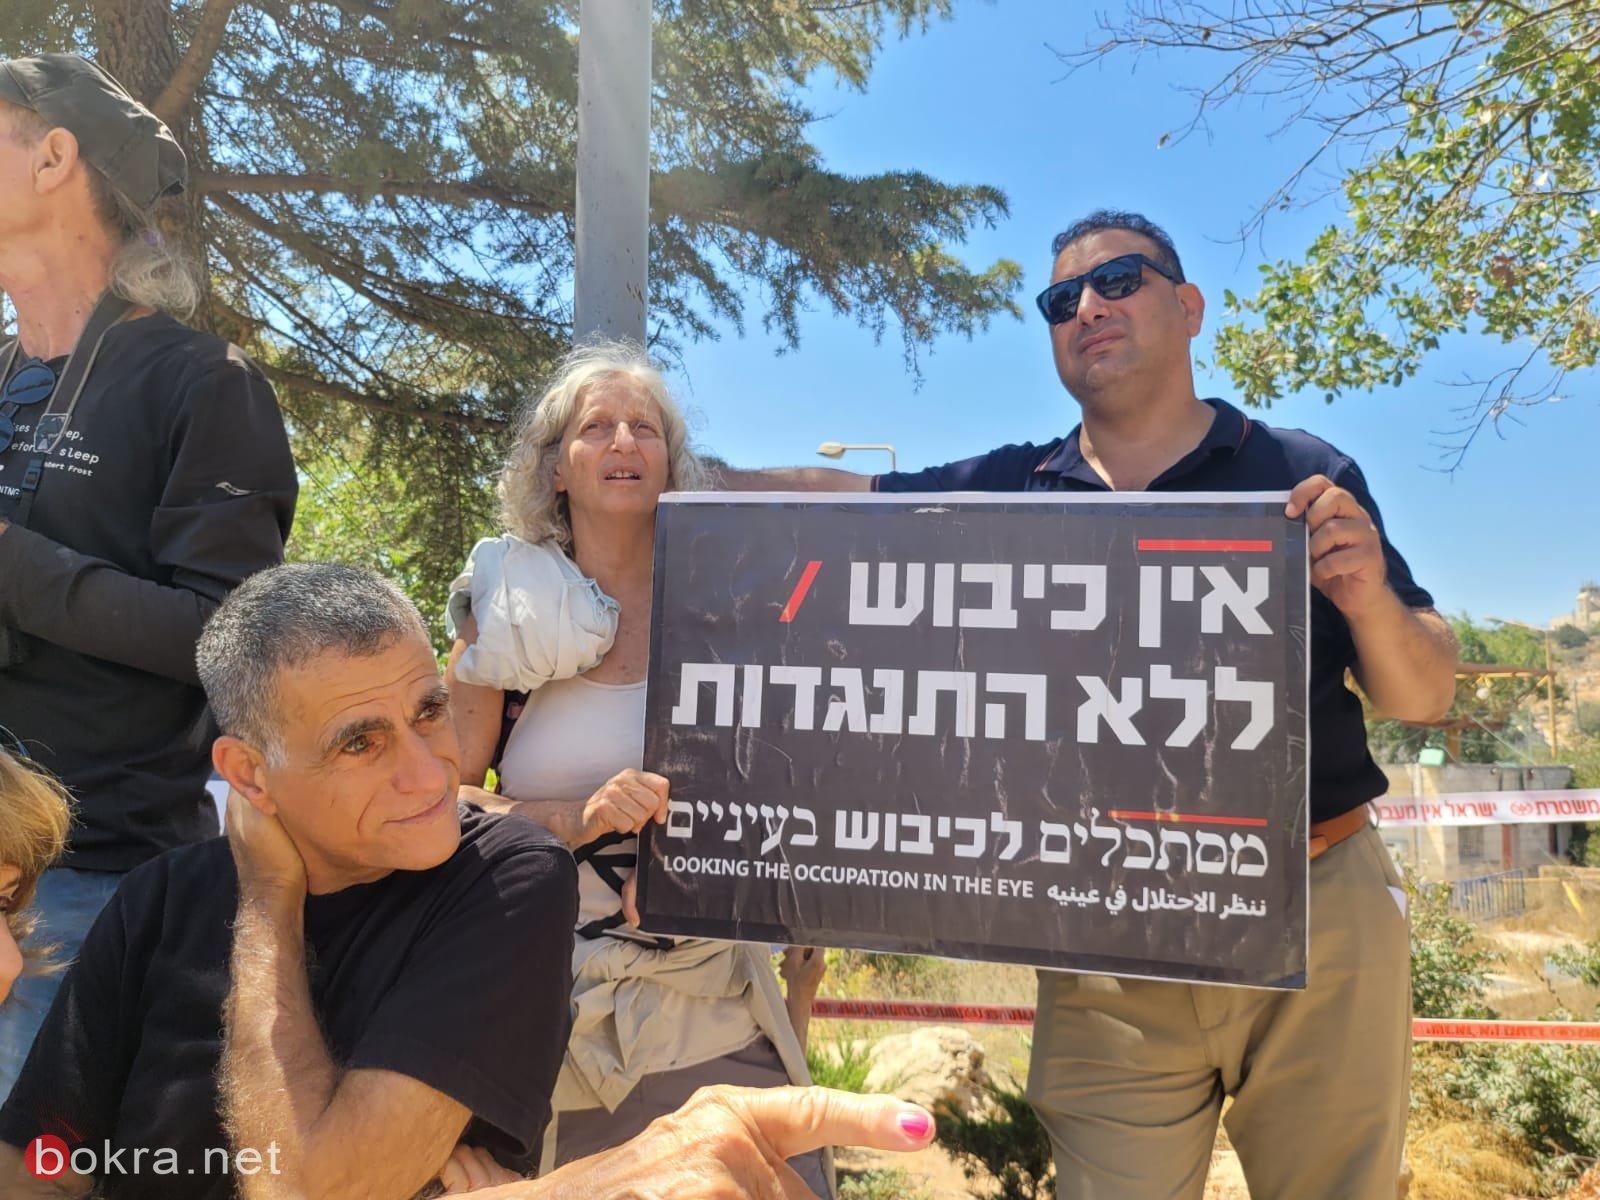 مظاهرة أمام منزل بن غفير في مستوطنة "كريات اربع"، ضد الاحتلال والفصل العنصري-5